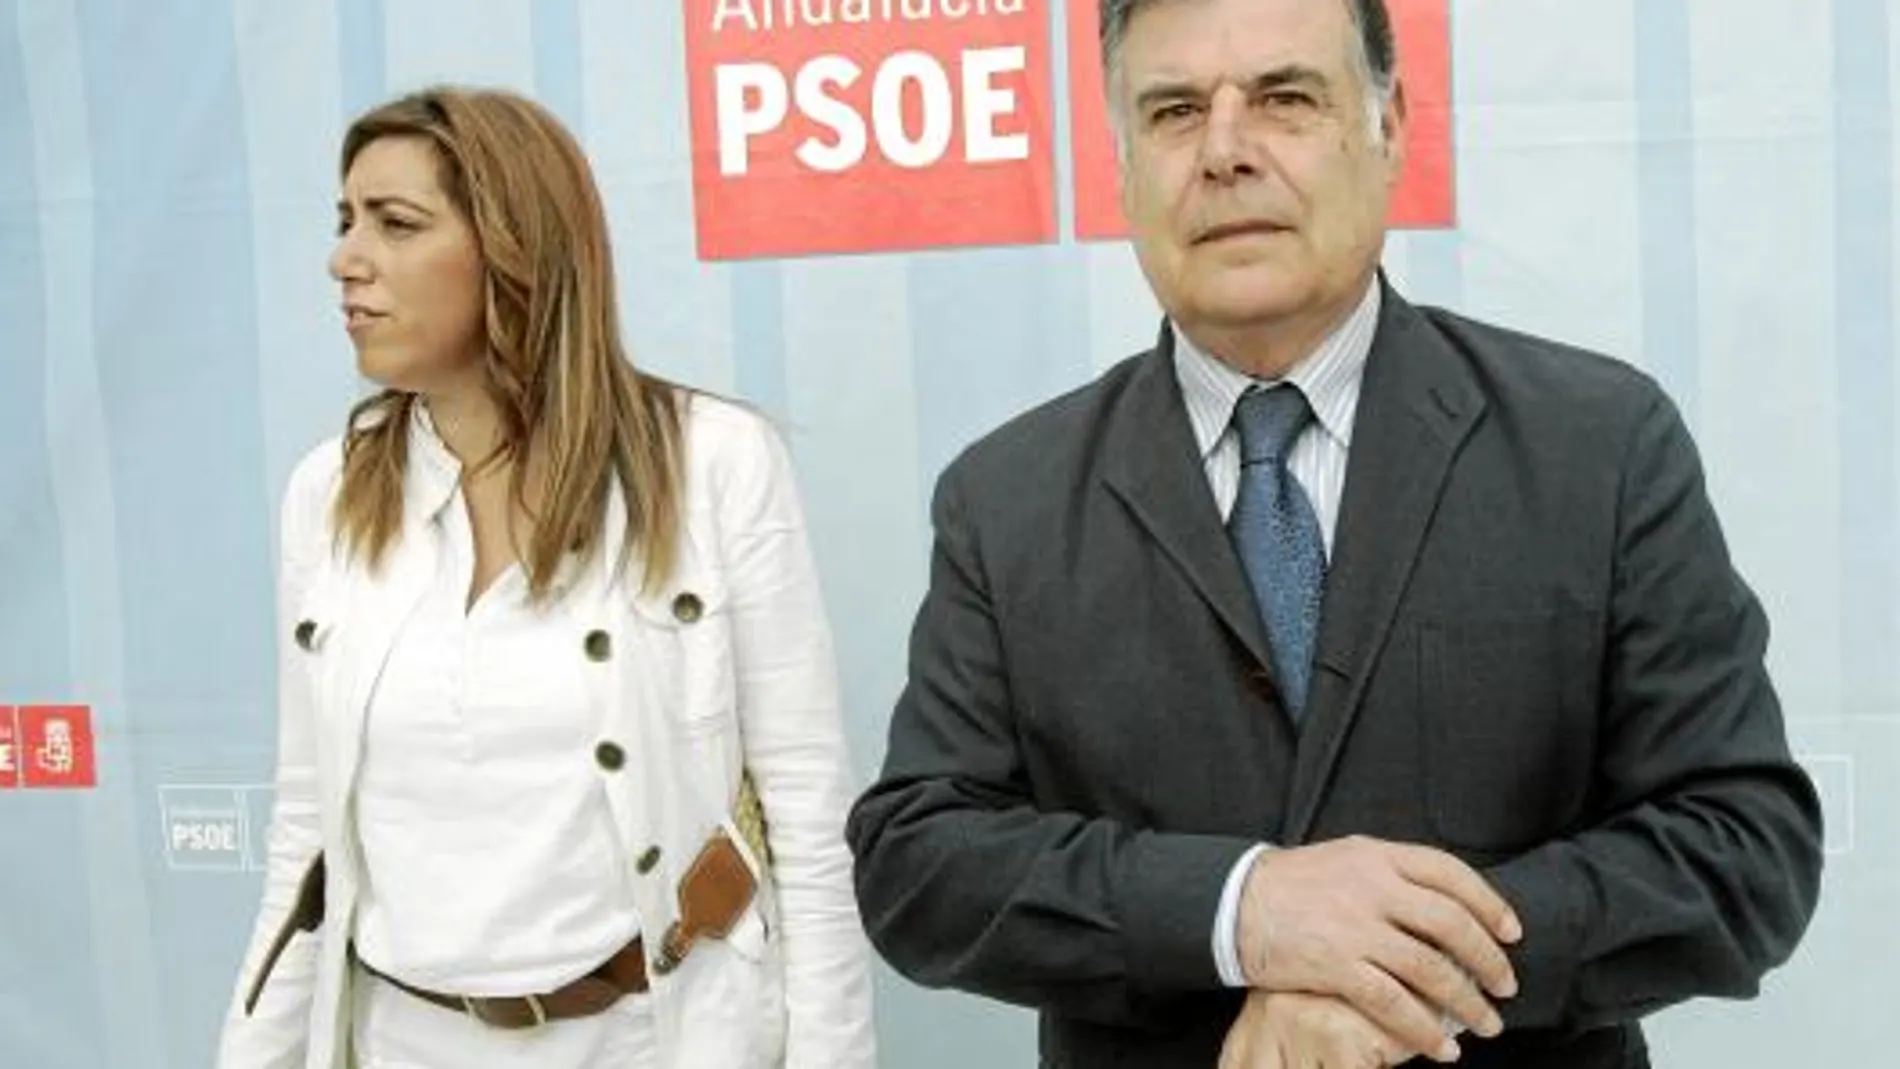 José Antonio Viera, en la imagen con Susana Díaz, se presenta como el «mediador» ante la Junta